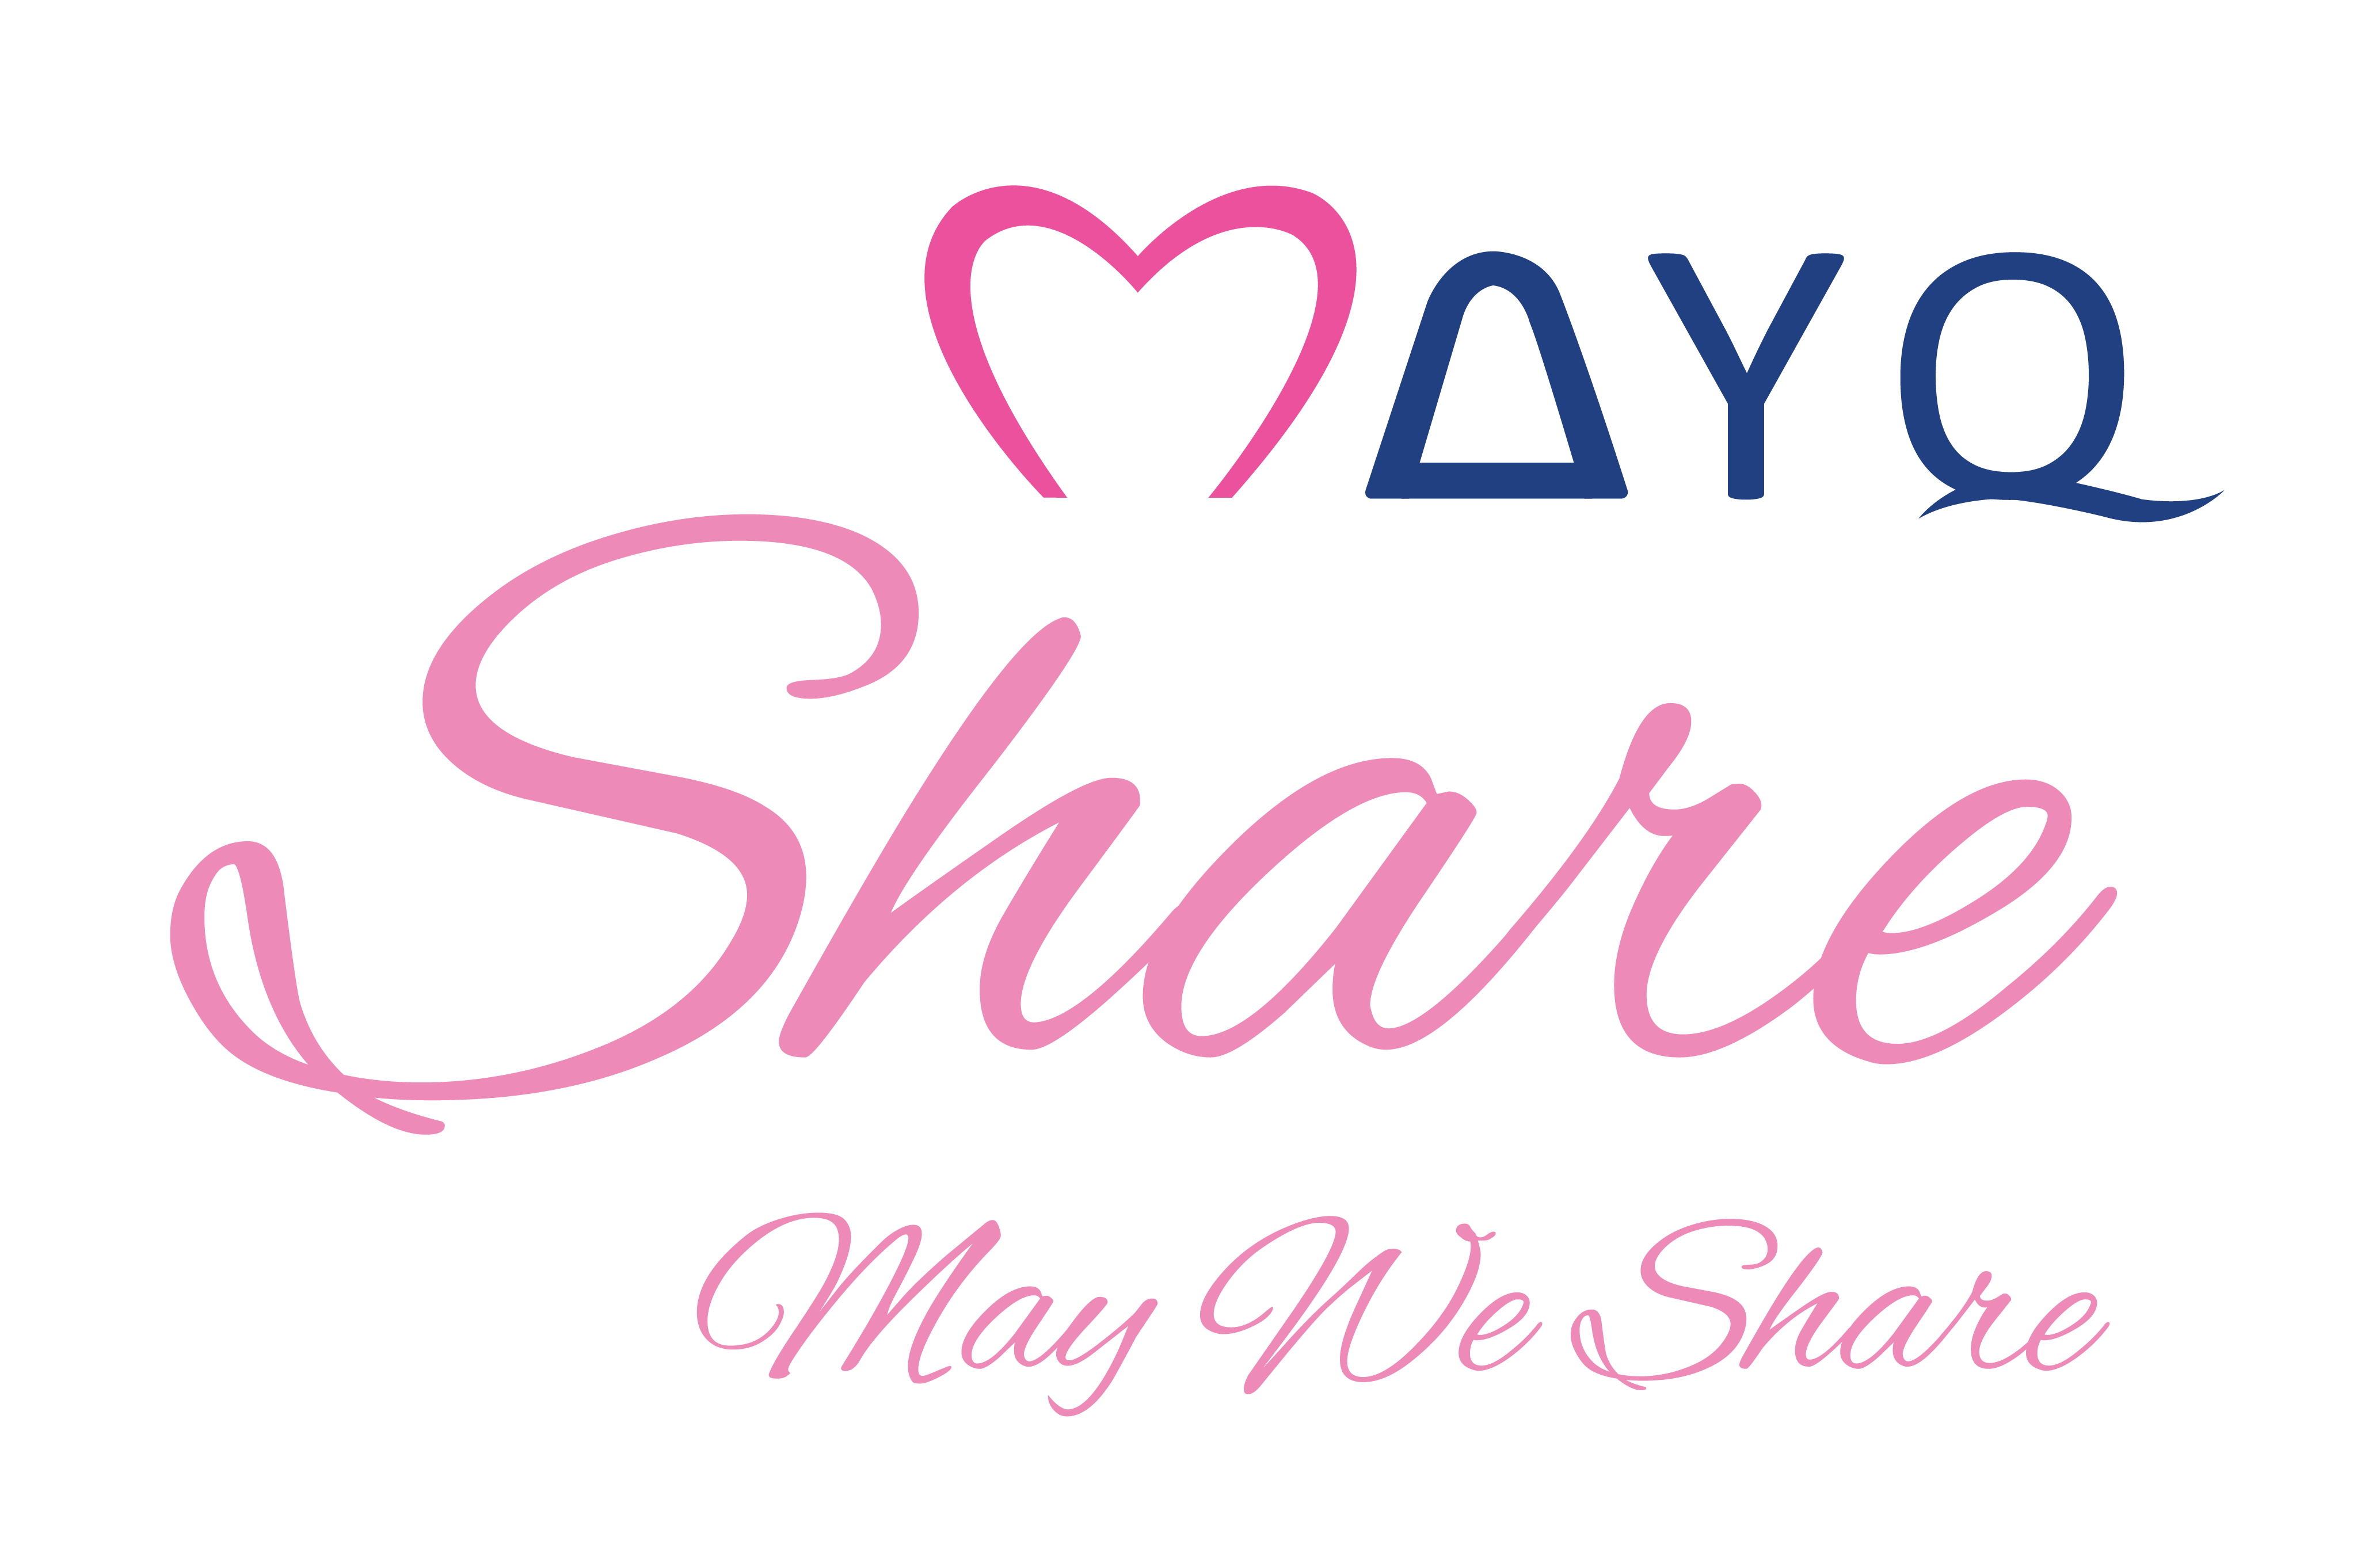 Logo mayq share